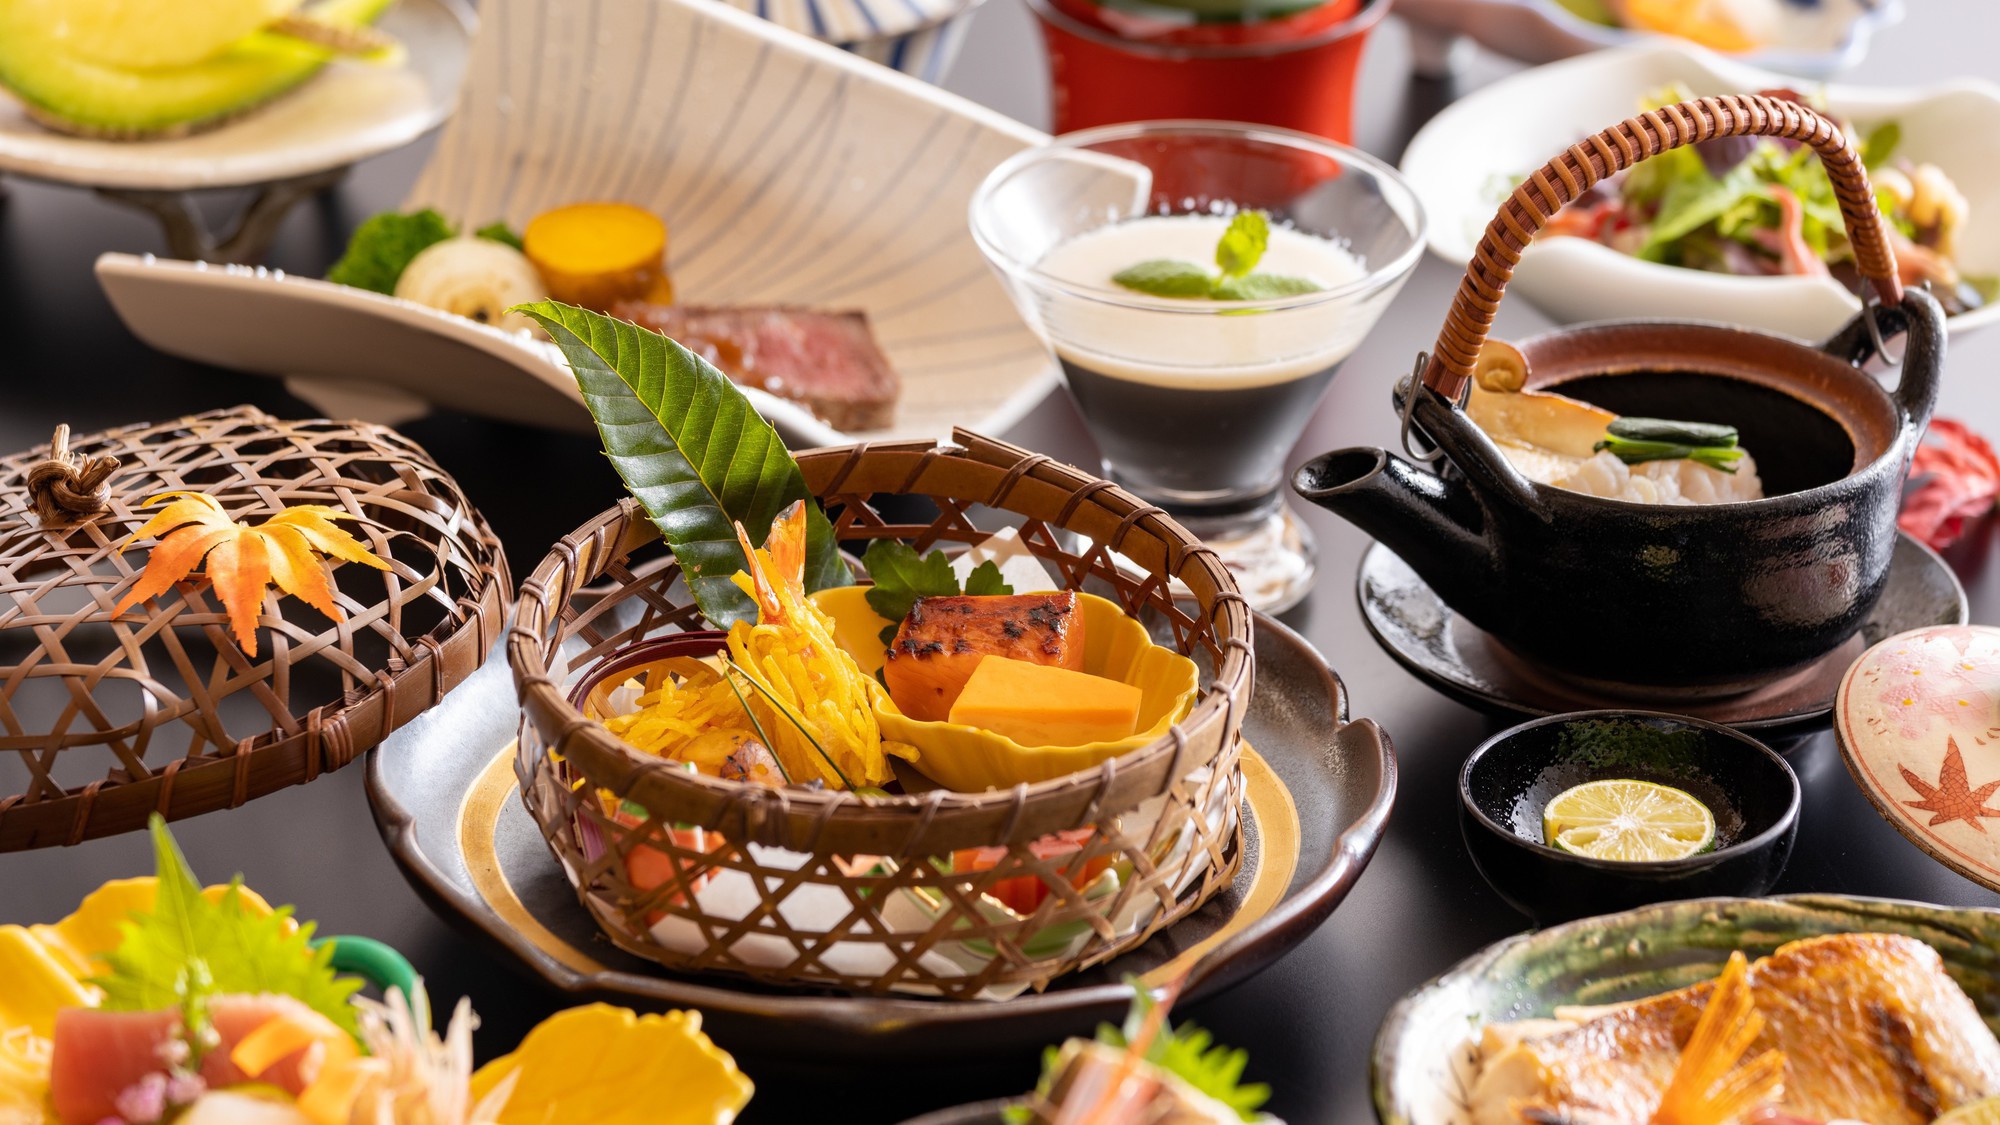 日本料理「千羽鶴」